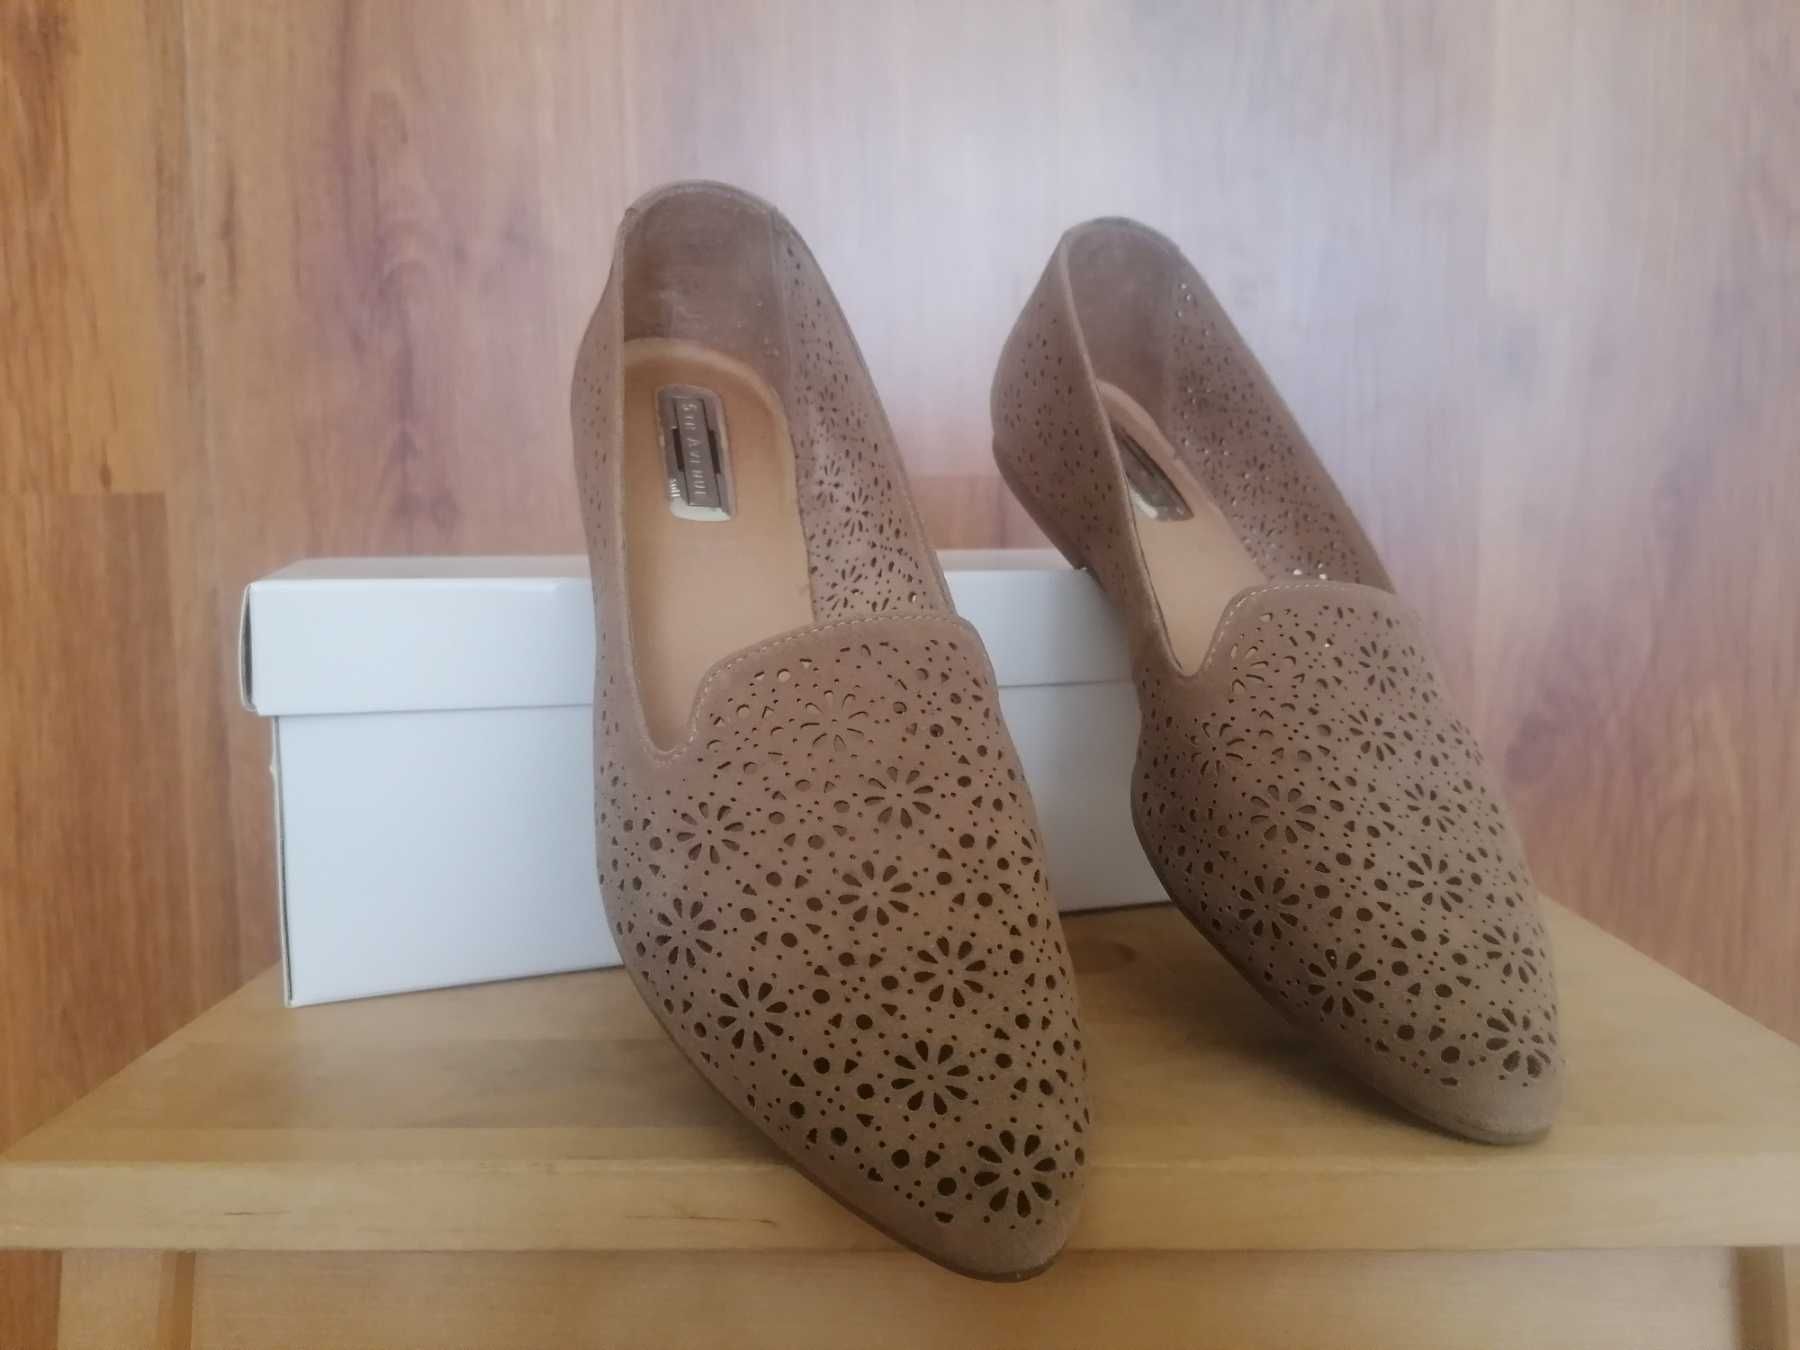 Дамски пантофки/балерини обувки от естествен велур, размер 39